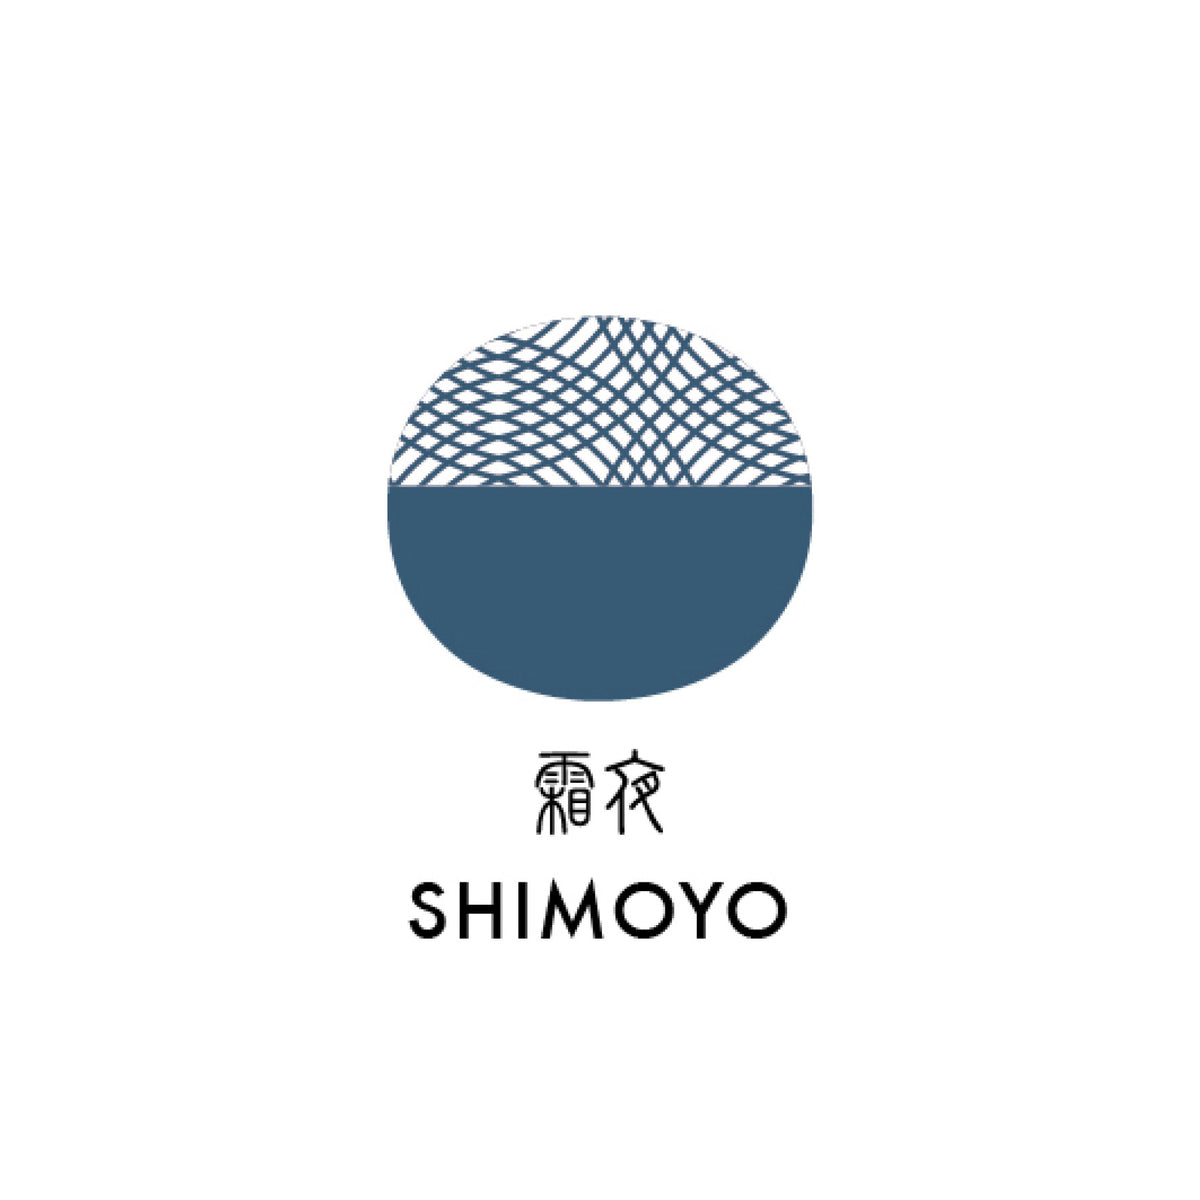 Sailor - Shikiori Ink 20ml - Shimoyo